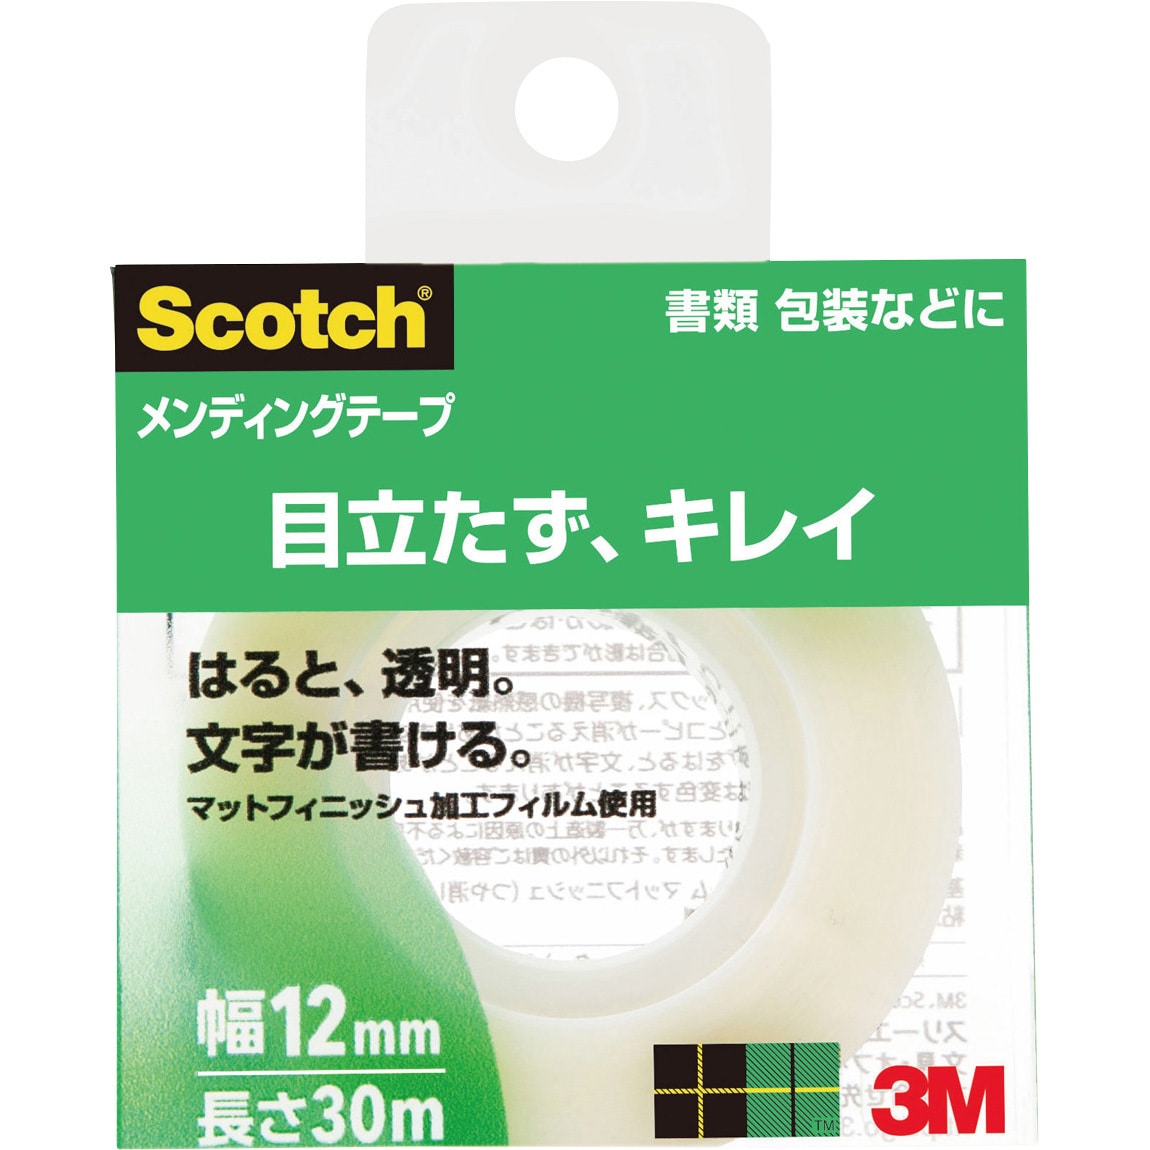 10個セット】 3M Scotch スコッチ メンディングテープ 12mm×50m 3M-810